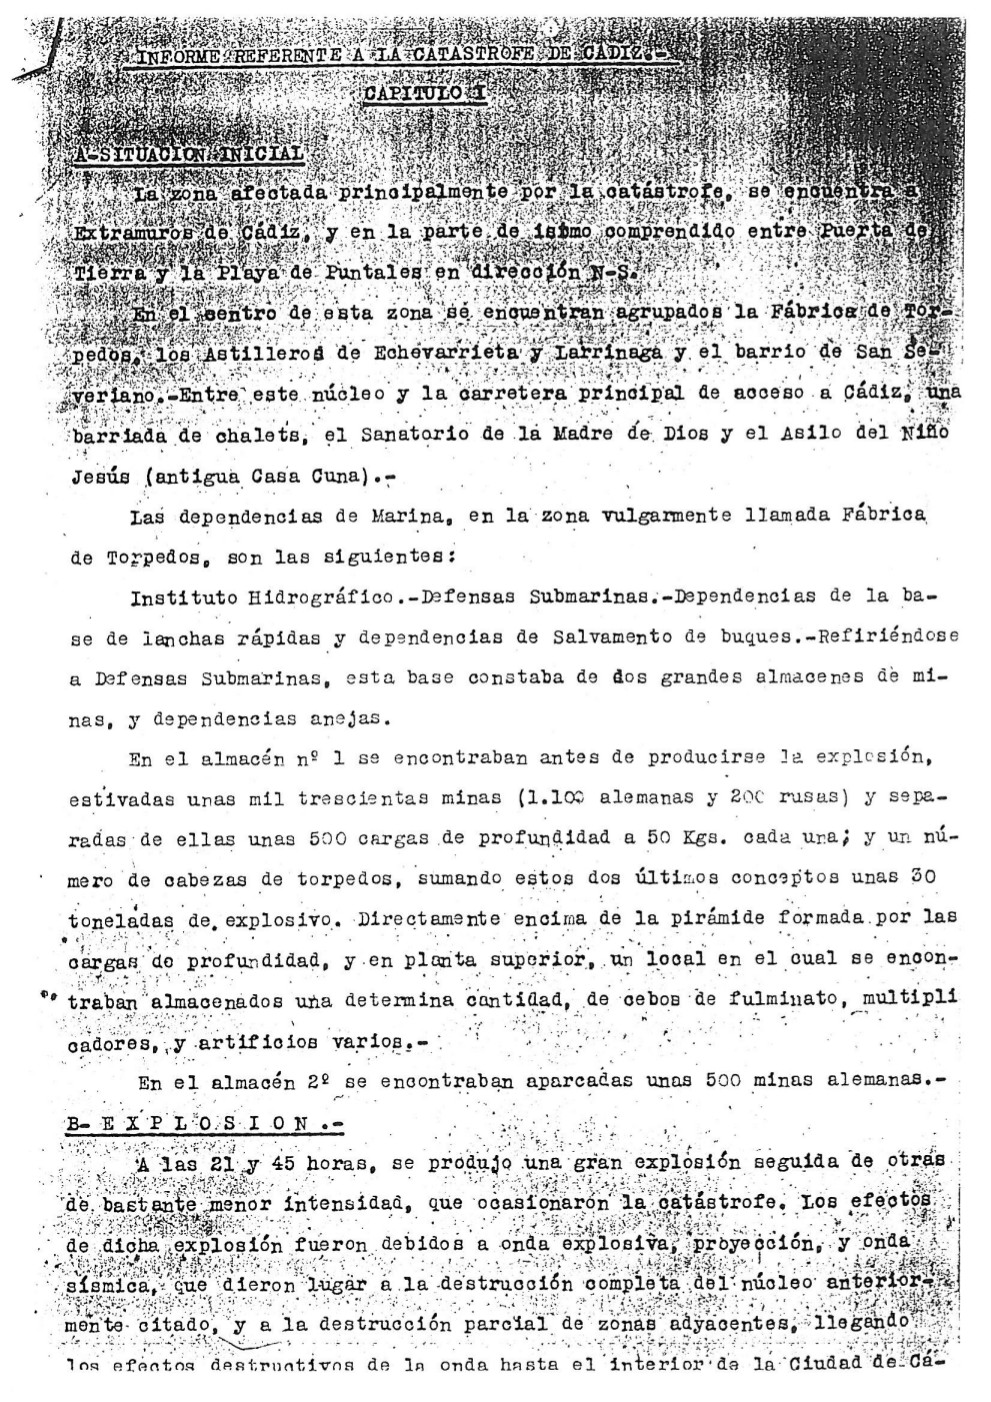 Informe del Almirante Estrada de 30 de agosto de 1947-08-1947